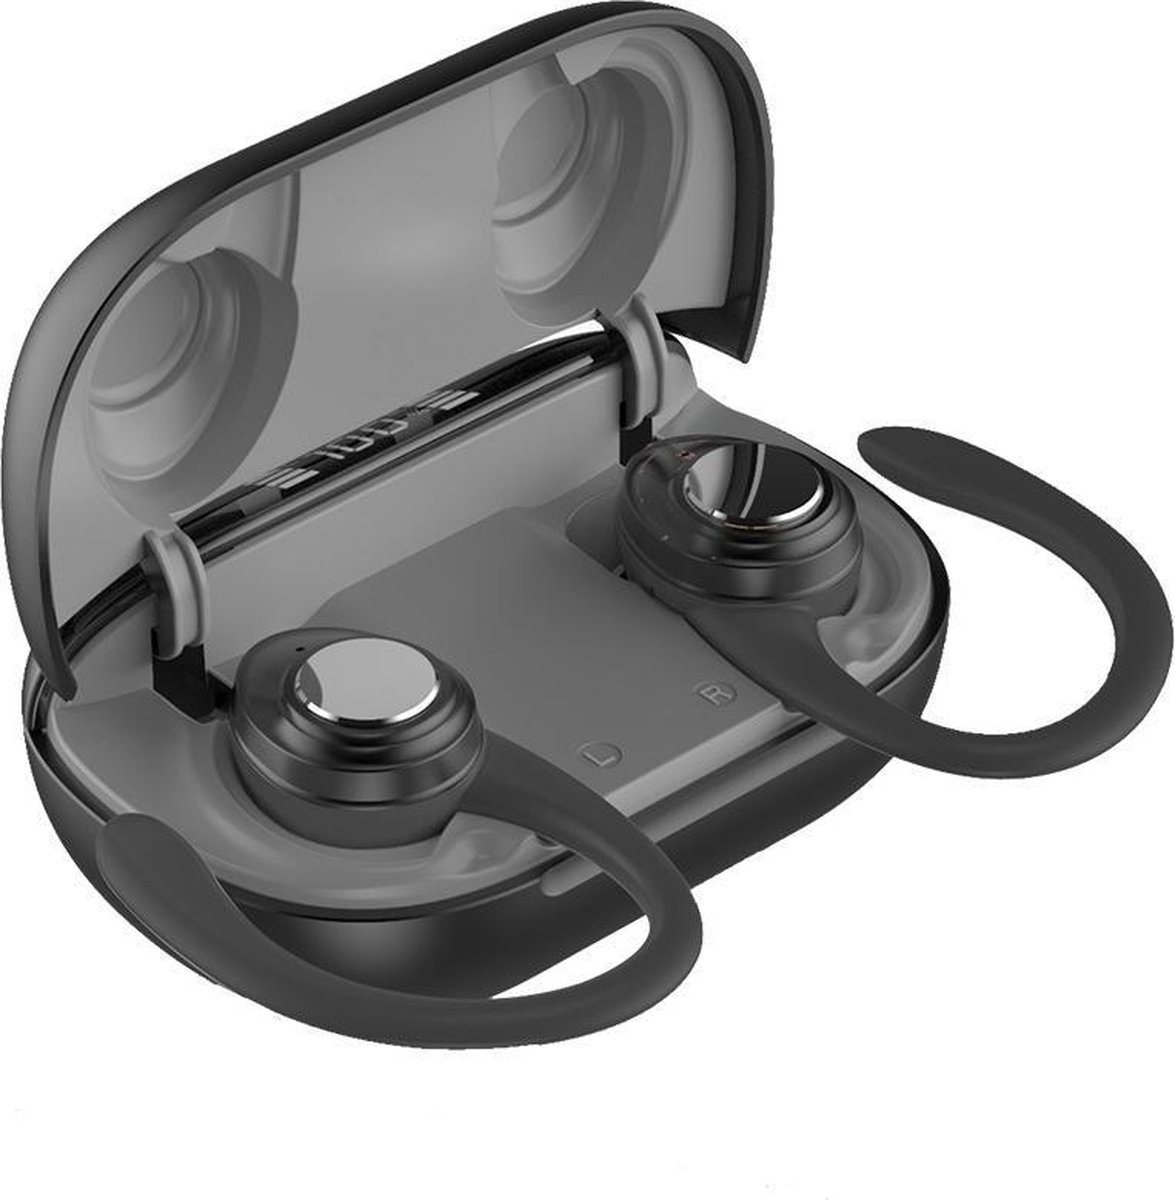 Draadloze oortjes / in-ear oordopjes - Bluetooth Draadloze buds - Alternatief - Sport headset - Luxe indicator - Geschikt voor alle smartphones o.a Samsung & Iphone, huawei, sony - Zwart.